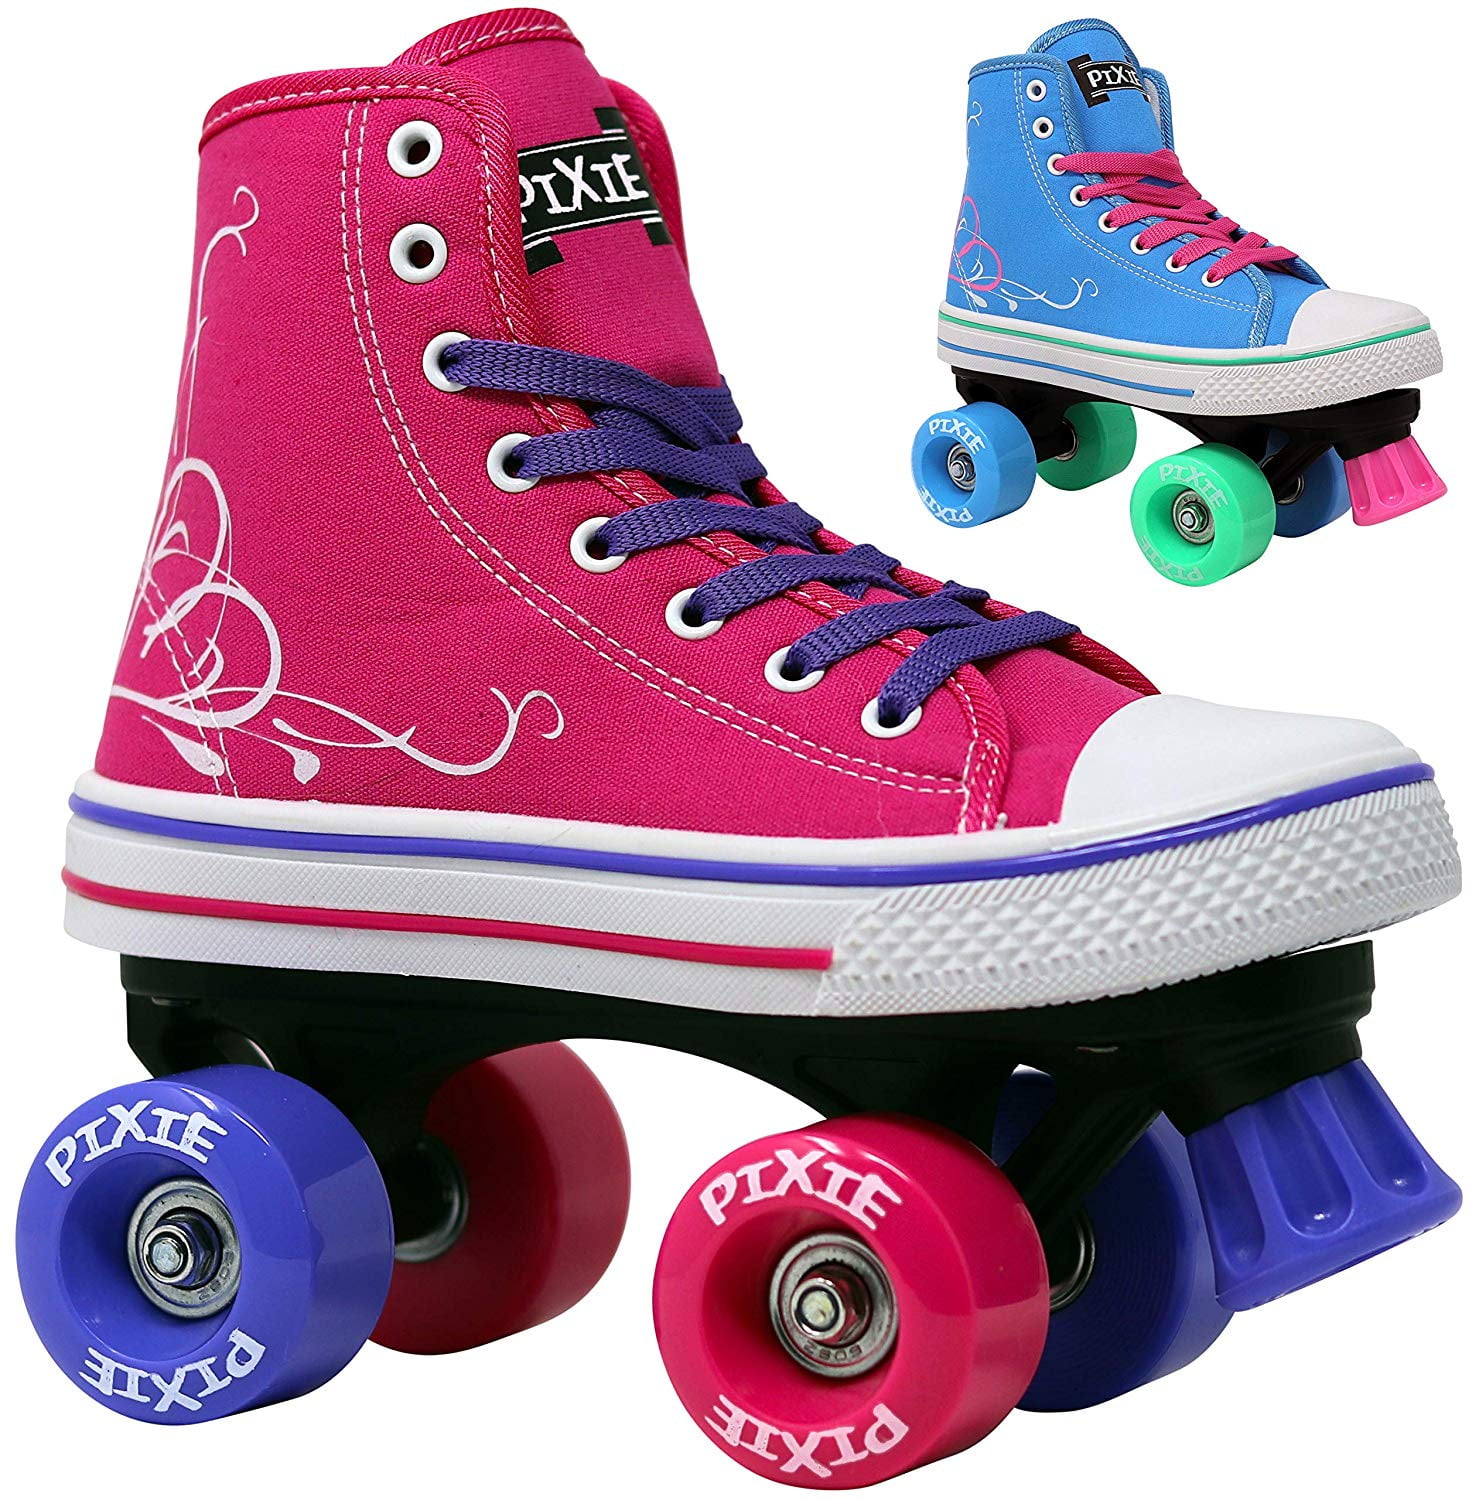 Lenexa Pixie Girl's Quad Roller Skates 